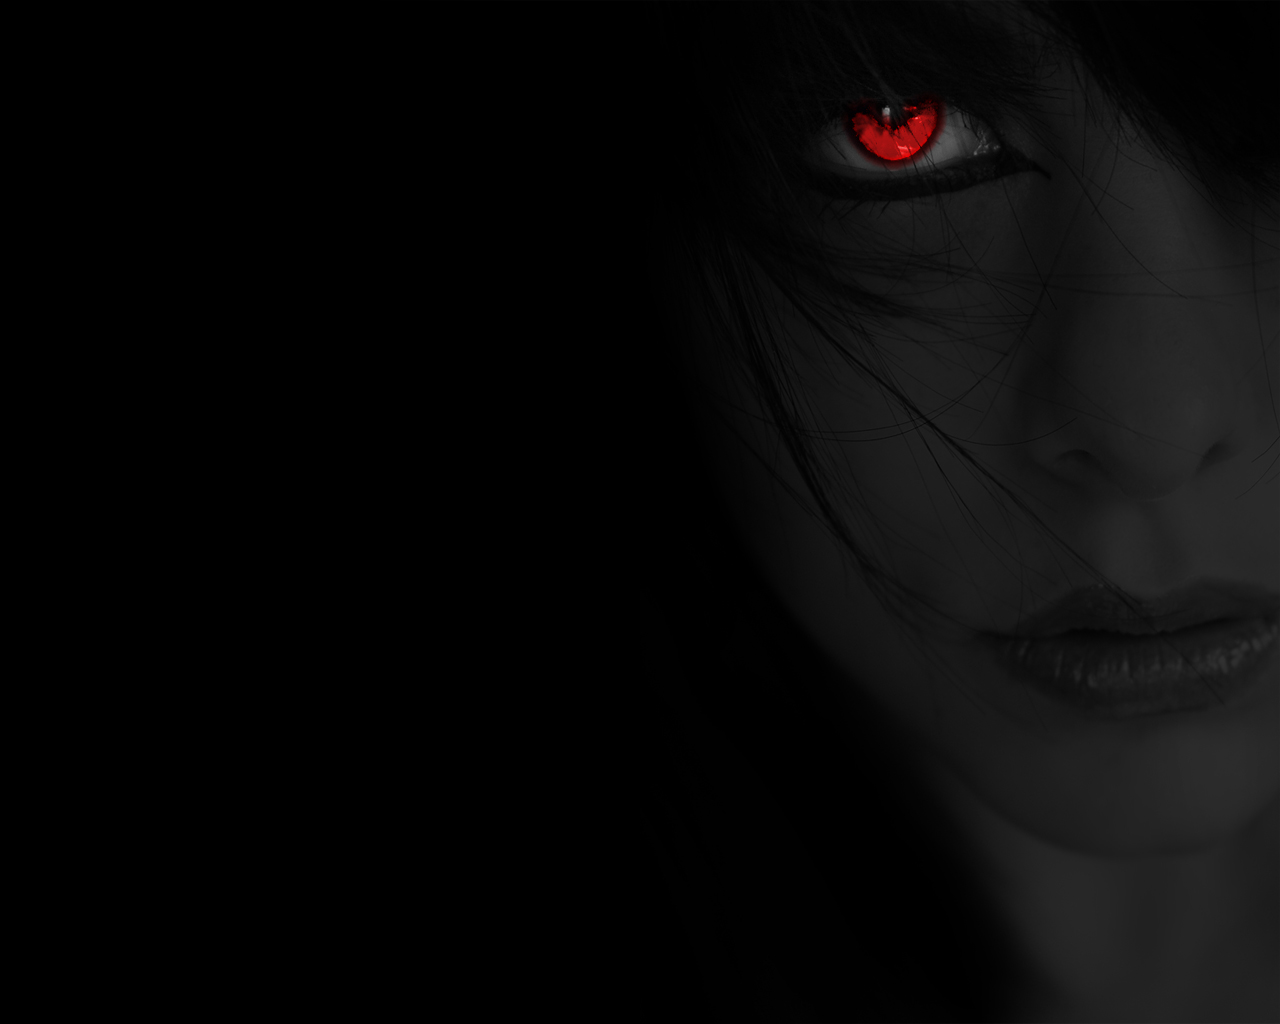 black, red eyes, gothic, women, eye, creepy